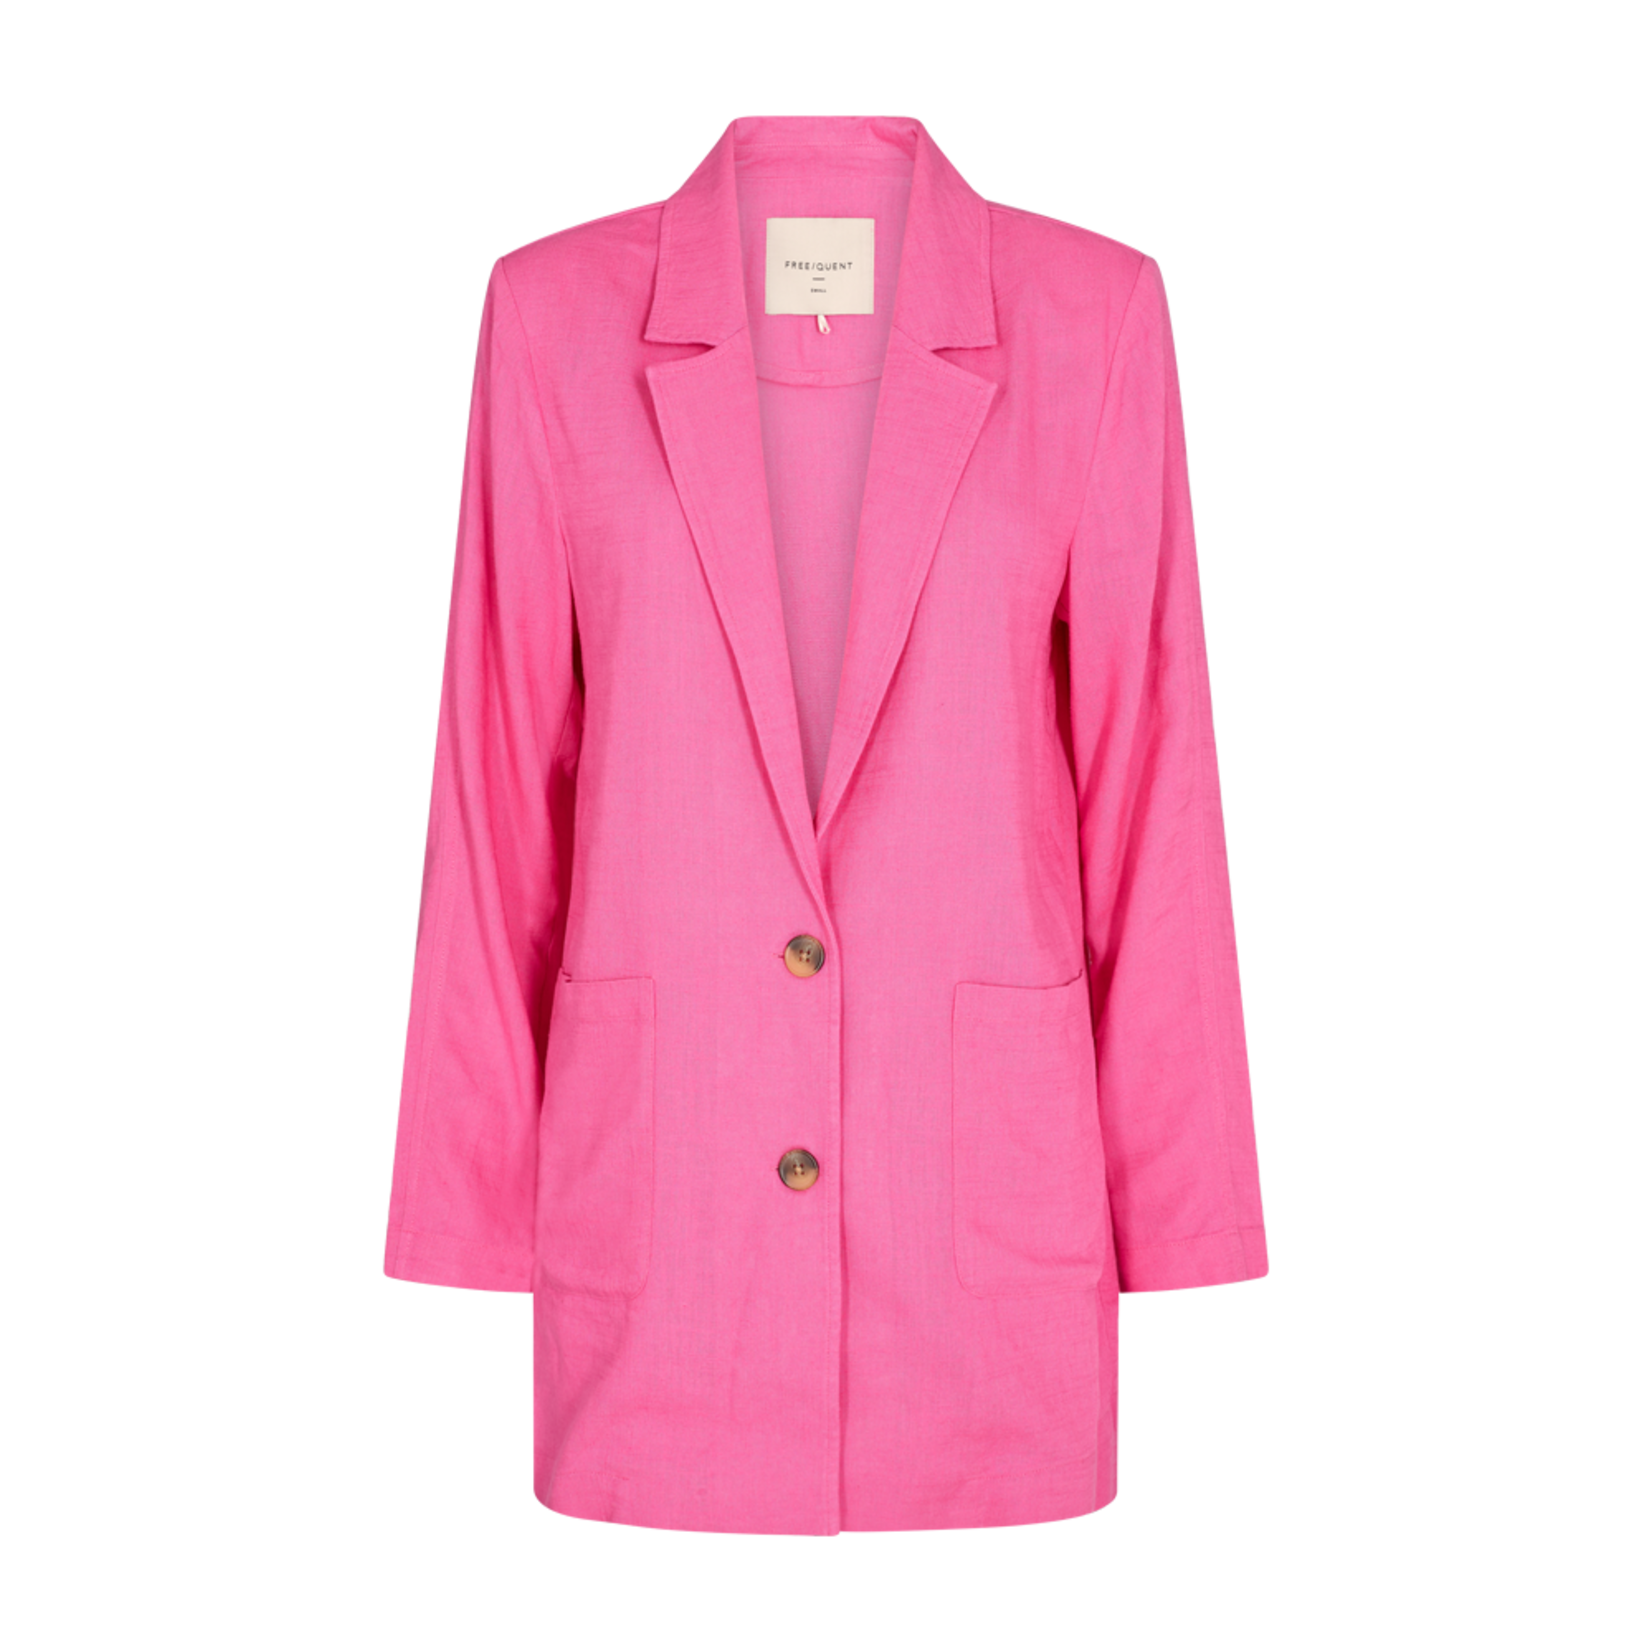 Free/quent Deze jas in roze linnen, de Luigi collectie